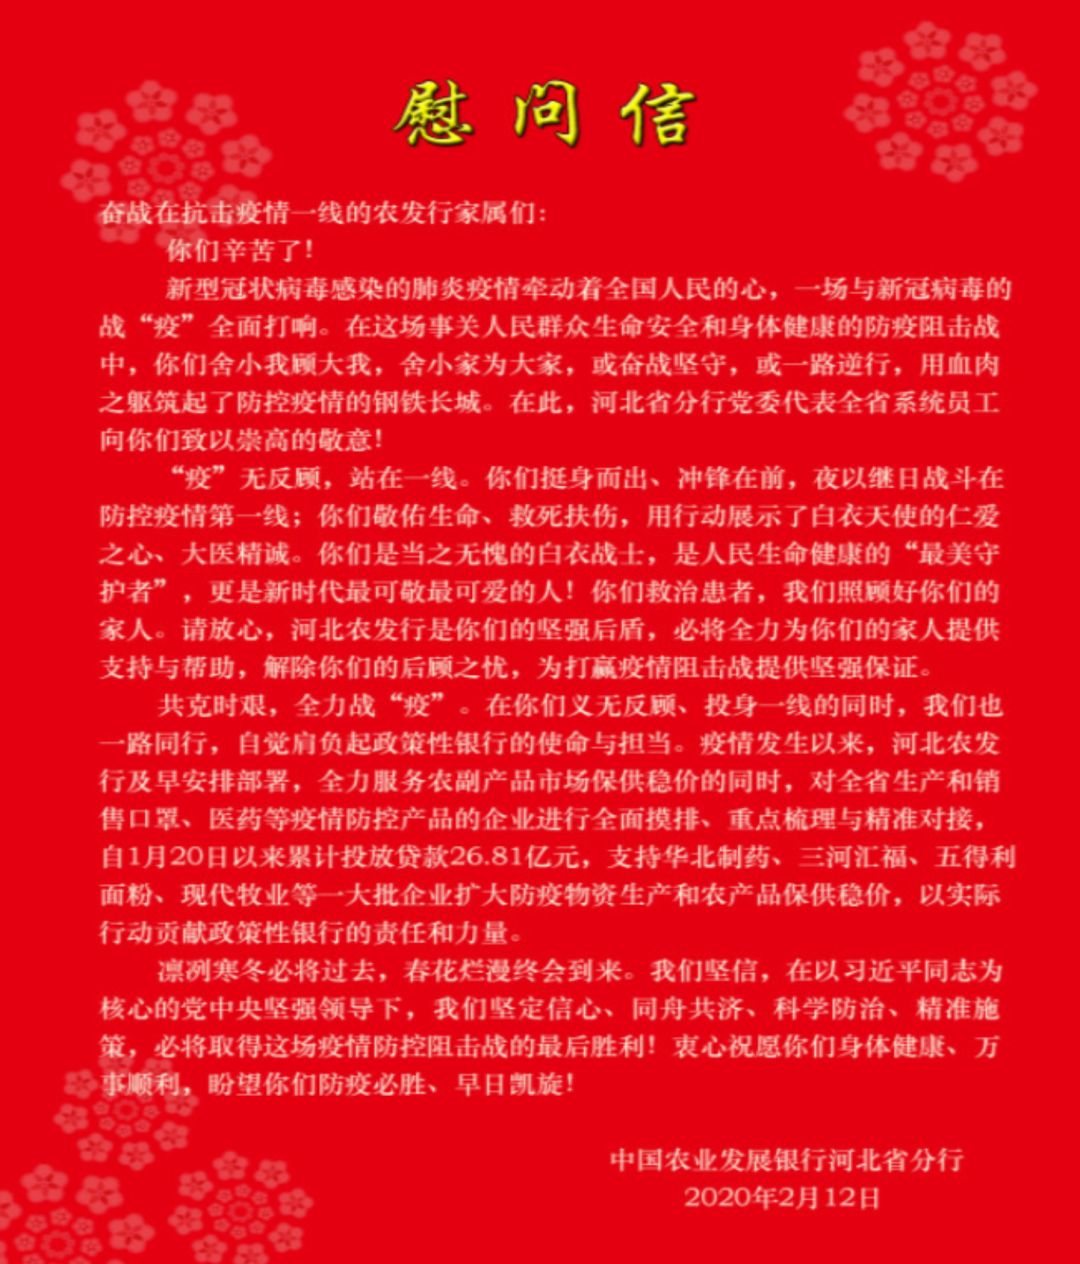 图为农发行河北省分行给奋战在抗疫一线的员工家属的慰问信